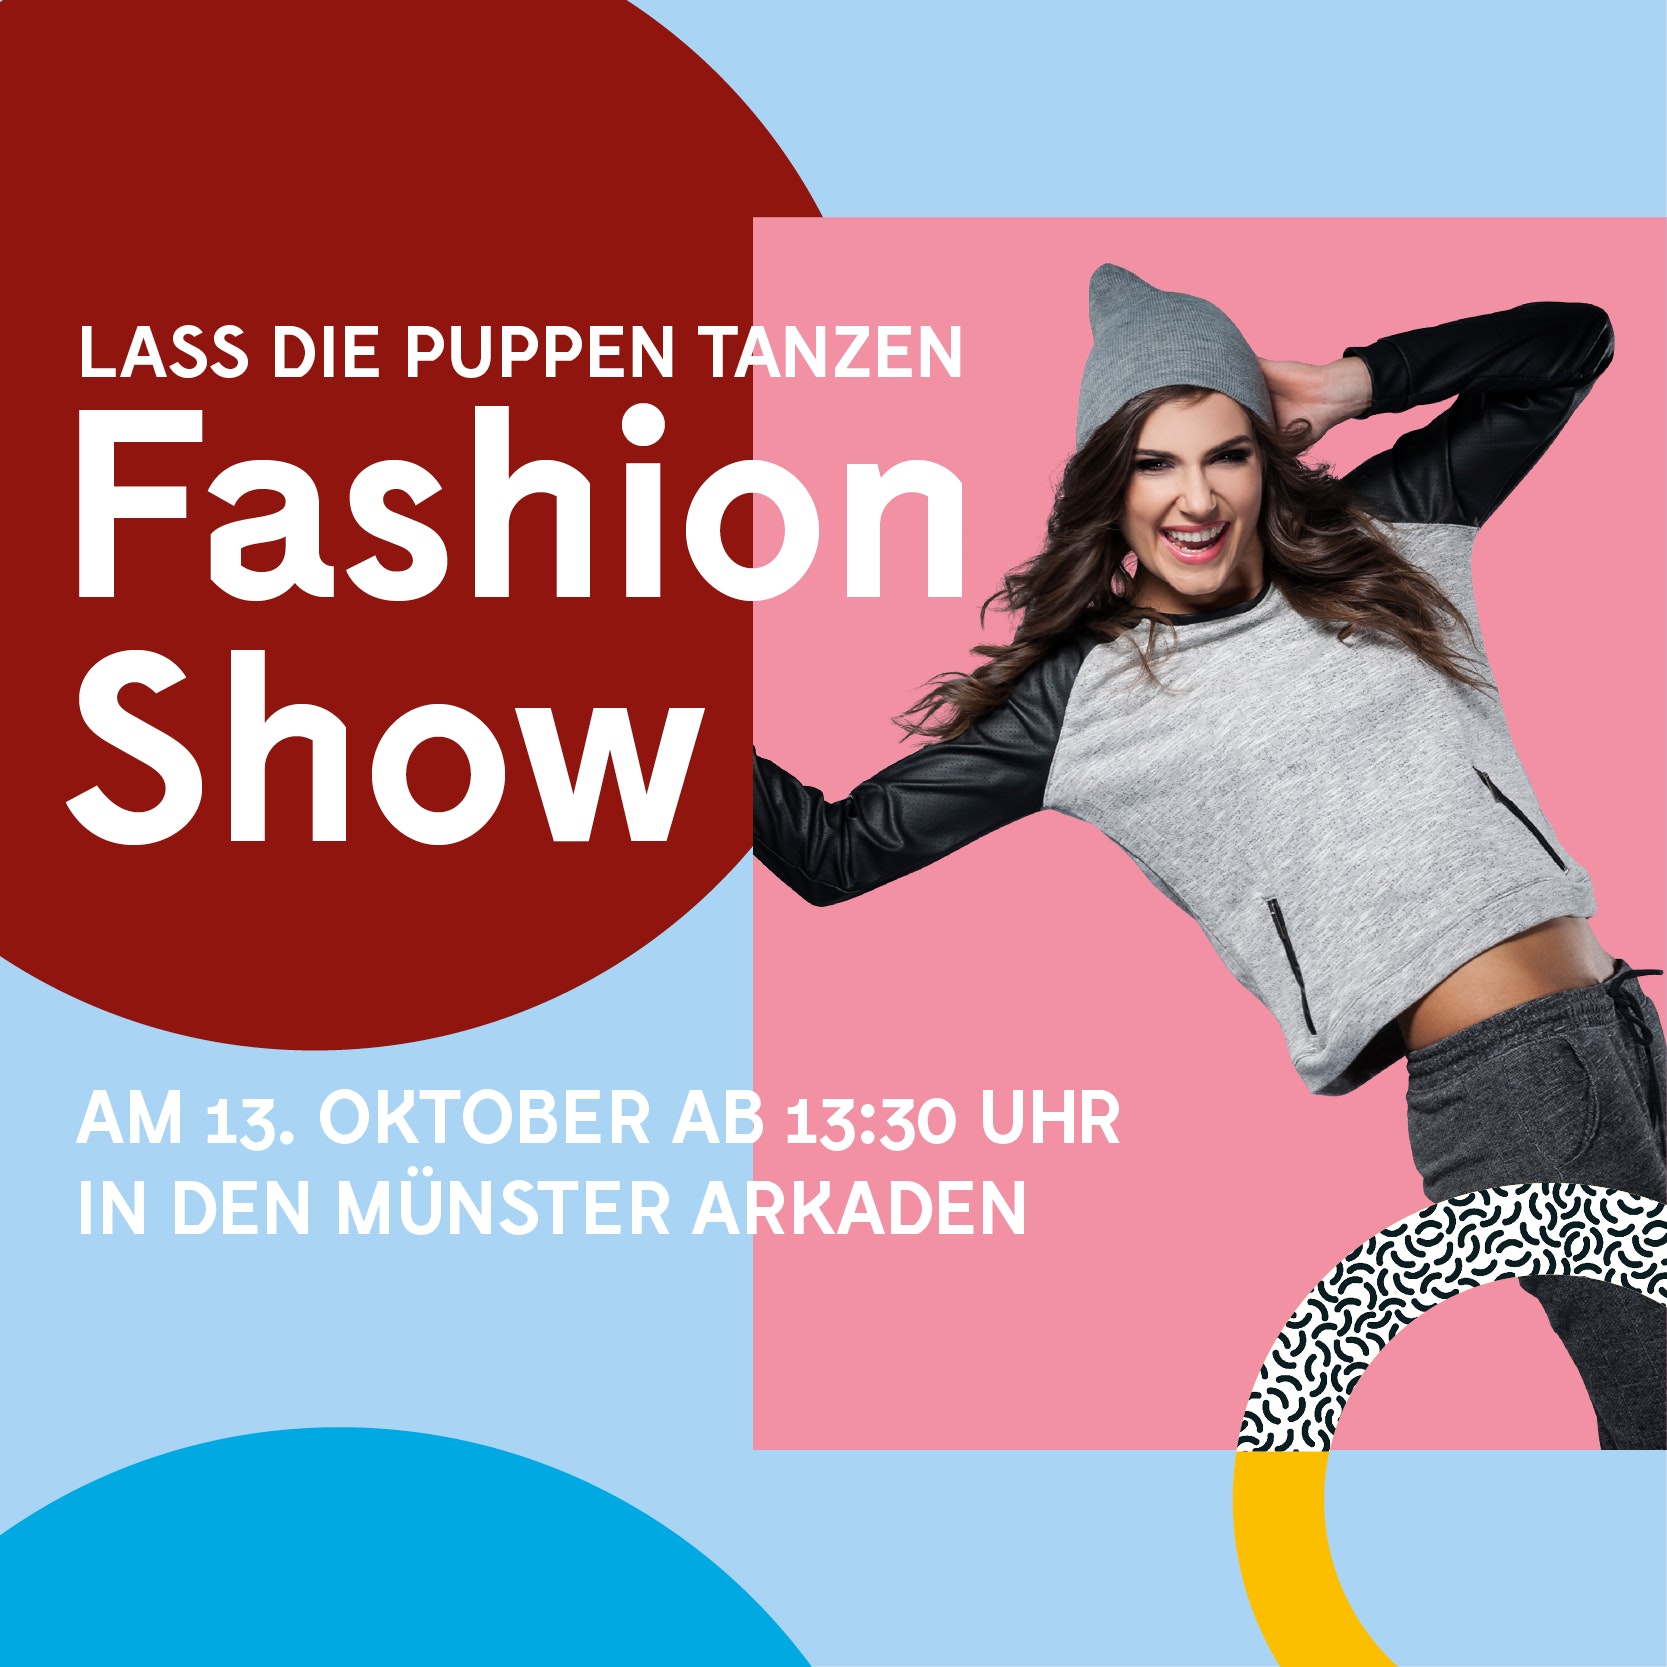 Fashion Show puppen tanzen Münster Arkaden